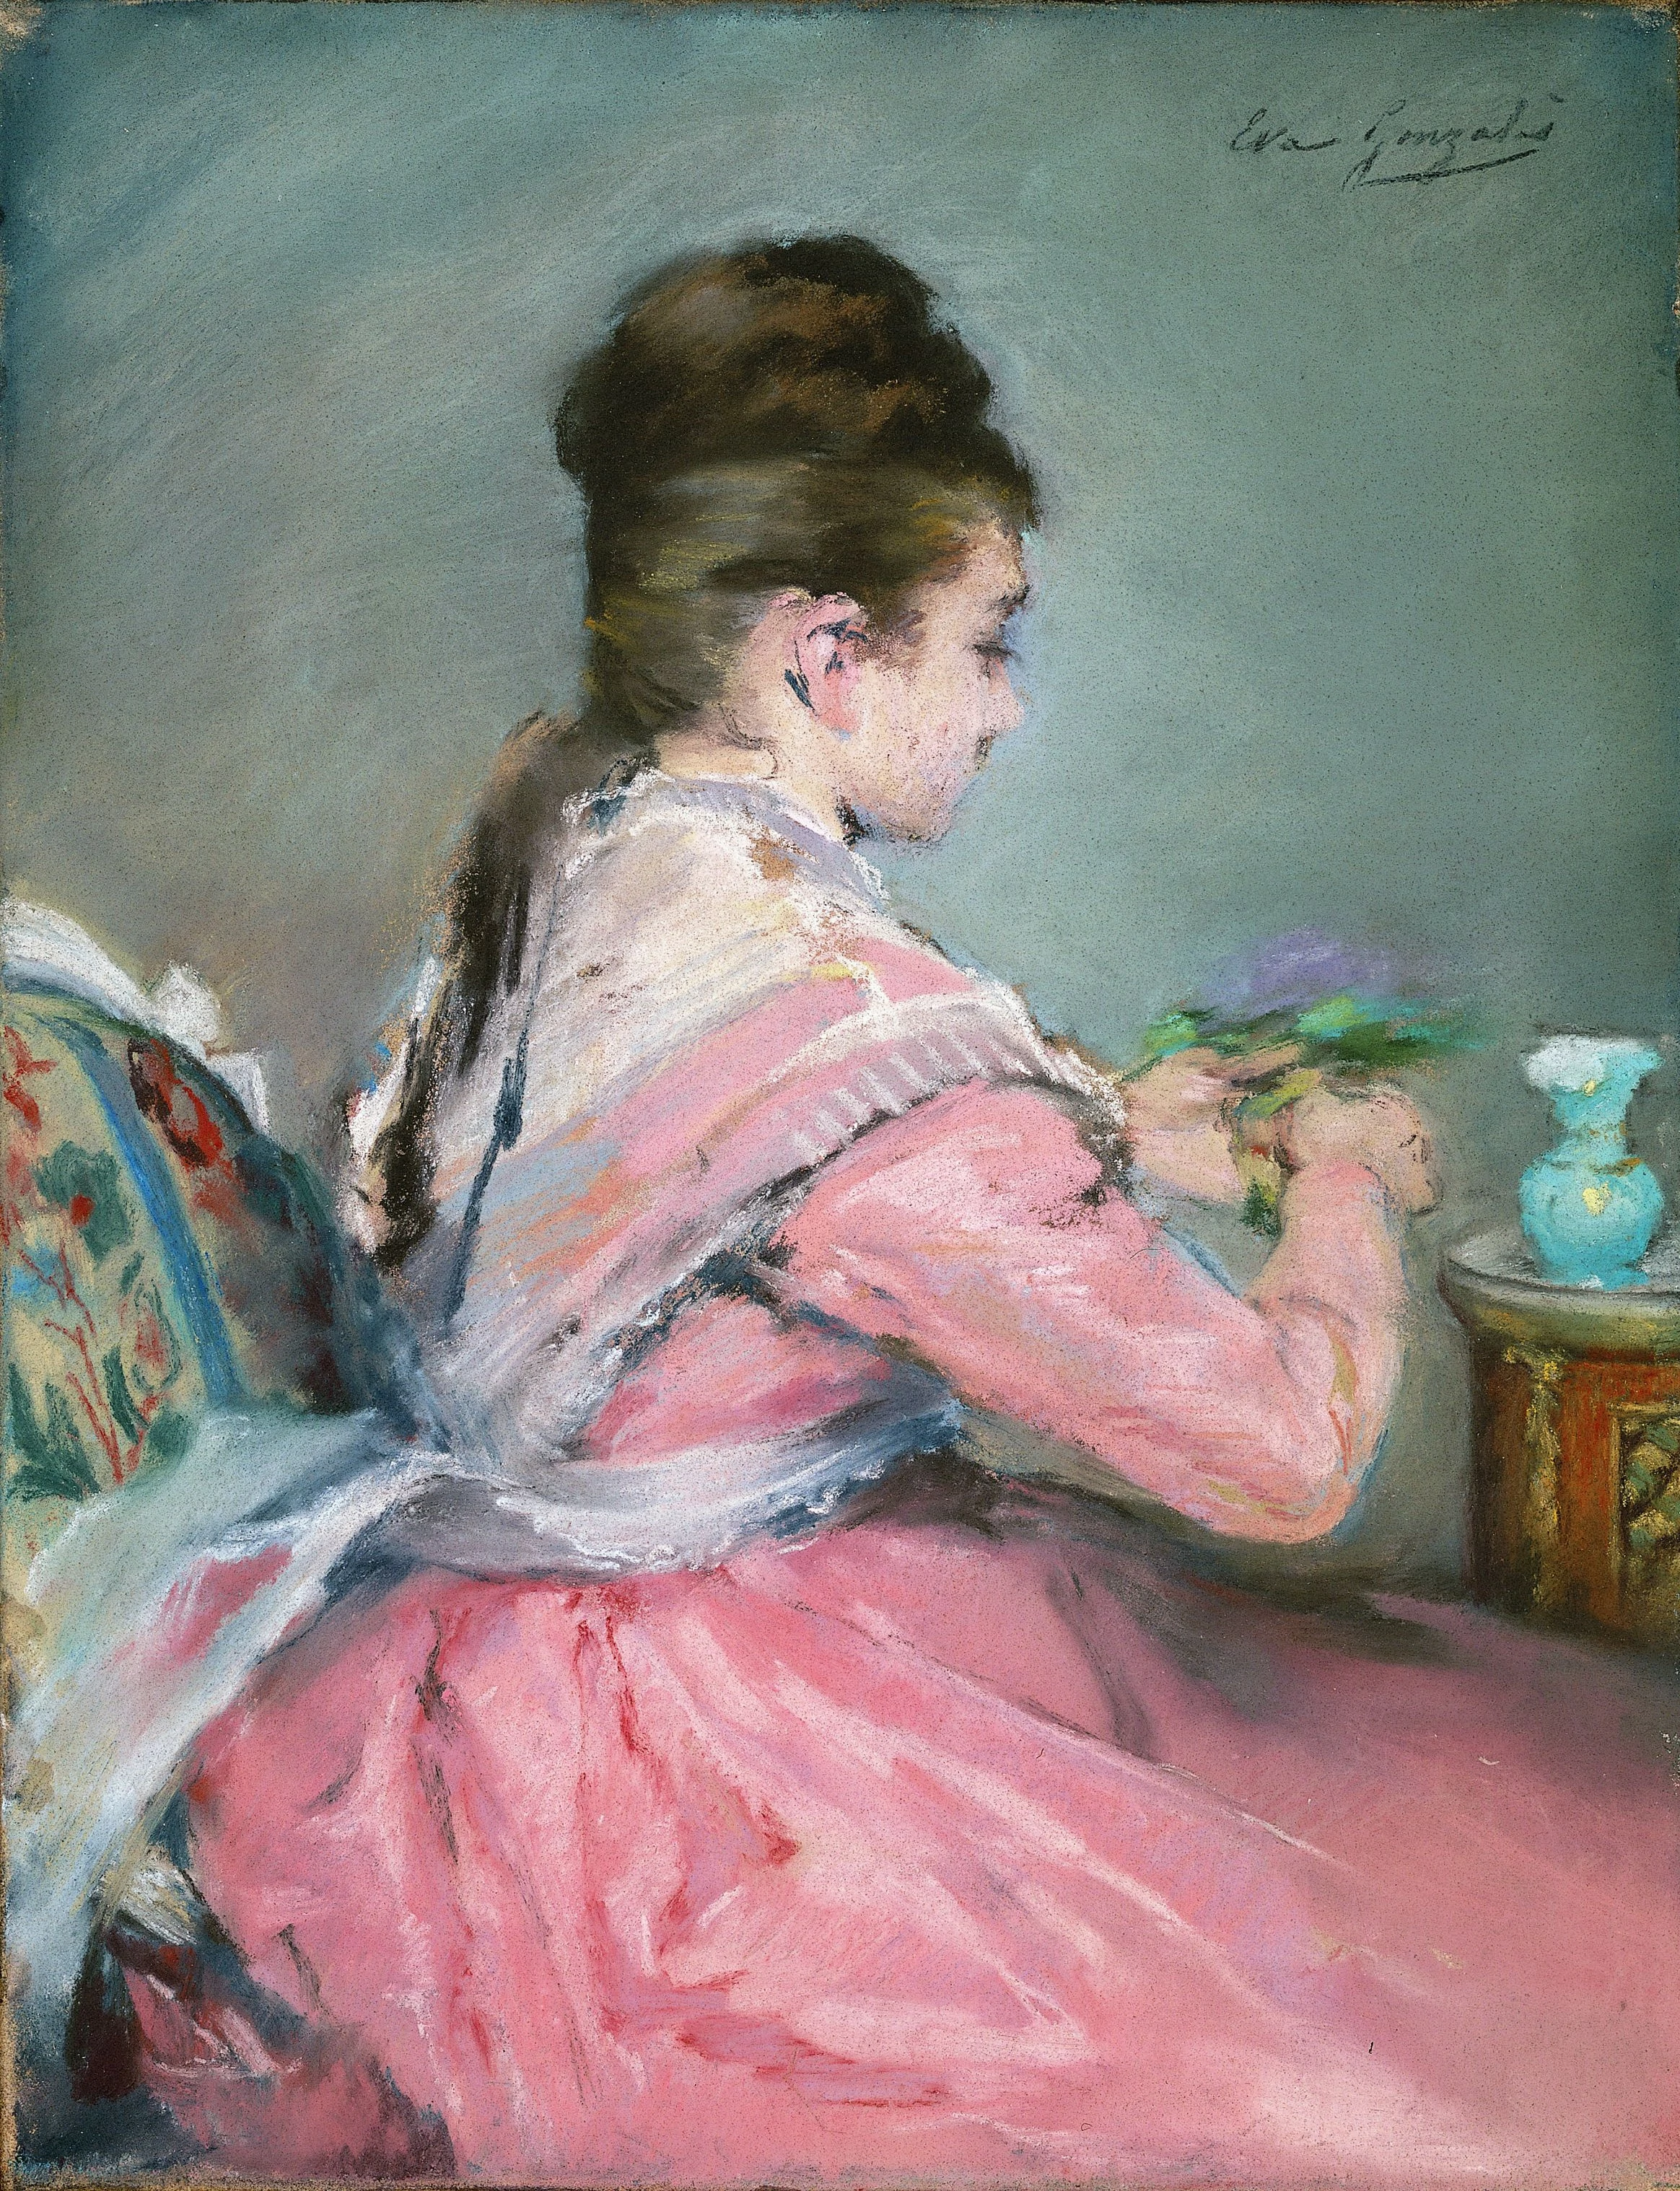 The Bouquet of Violets, Eva Gonzalès